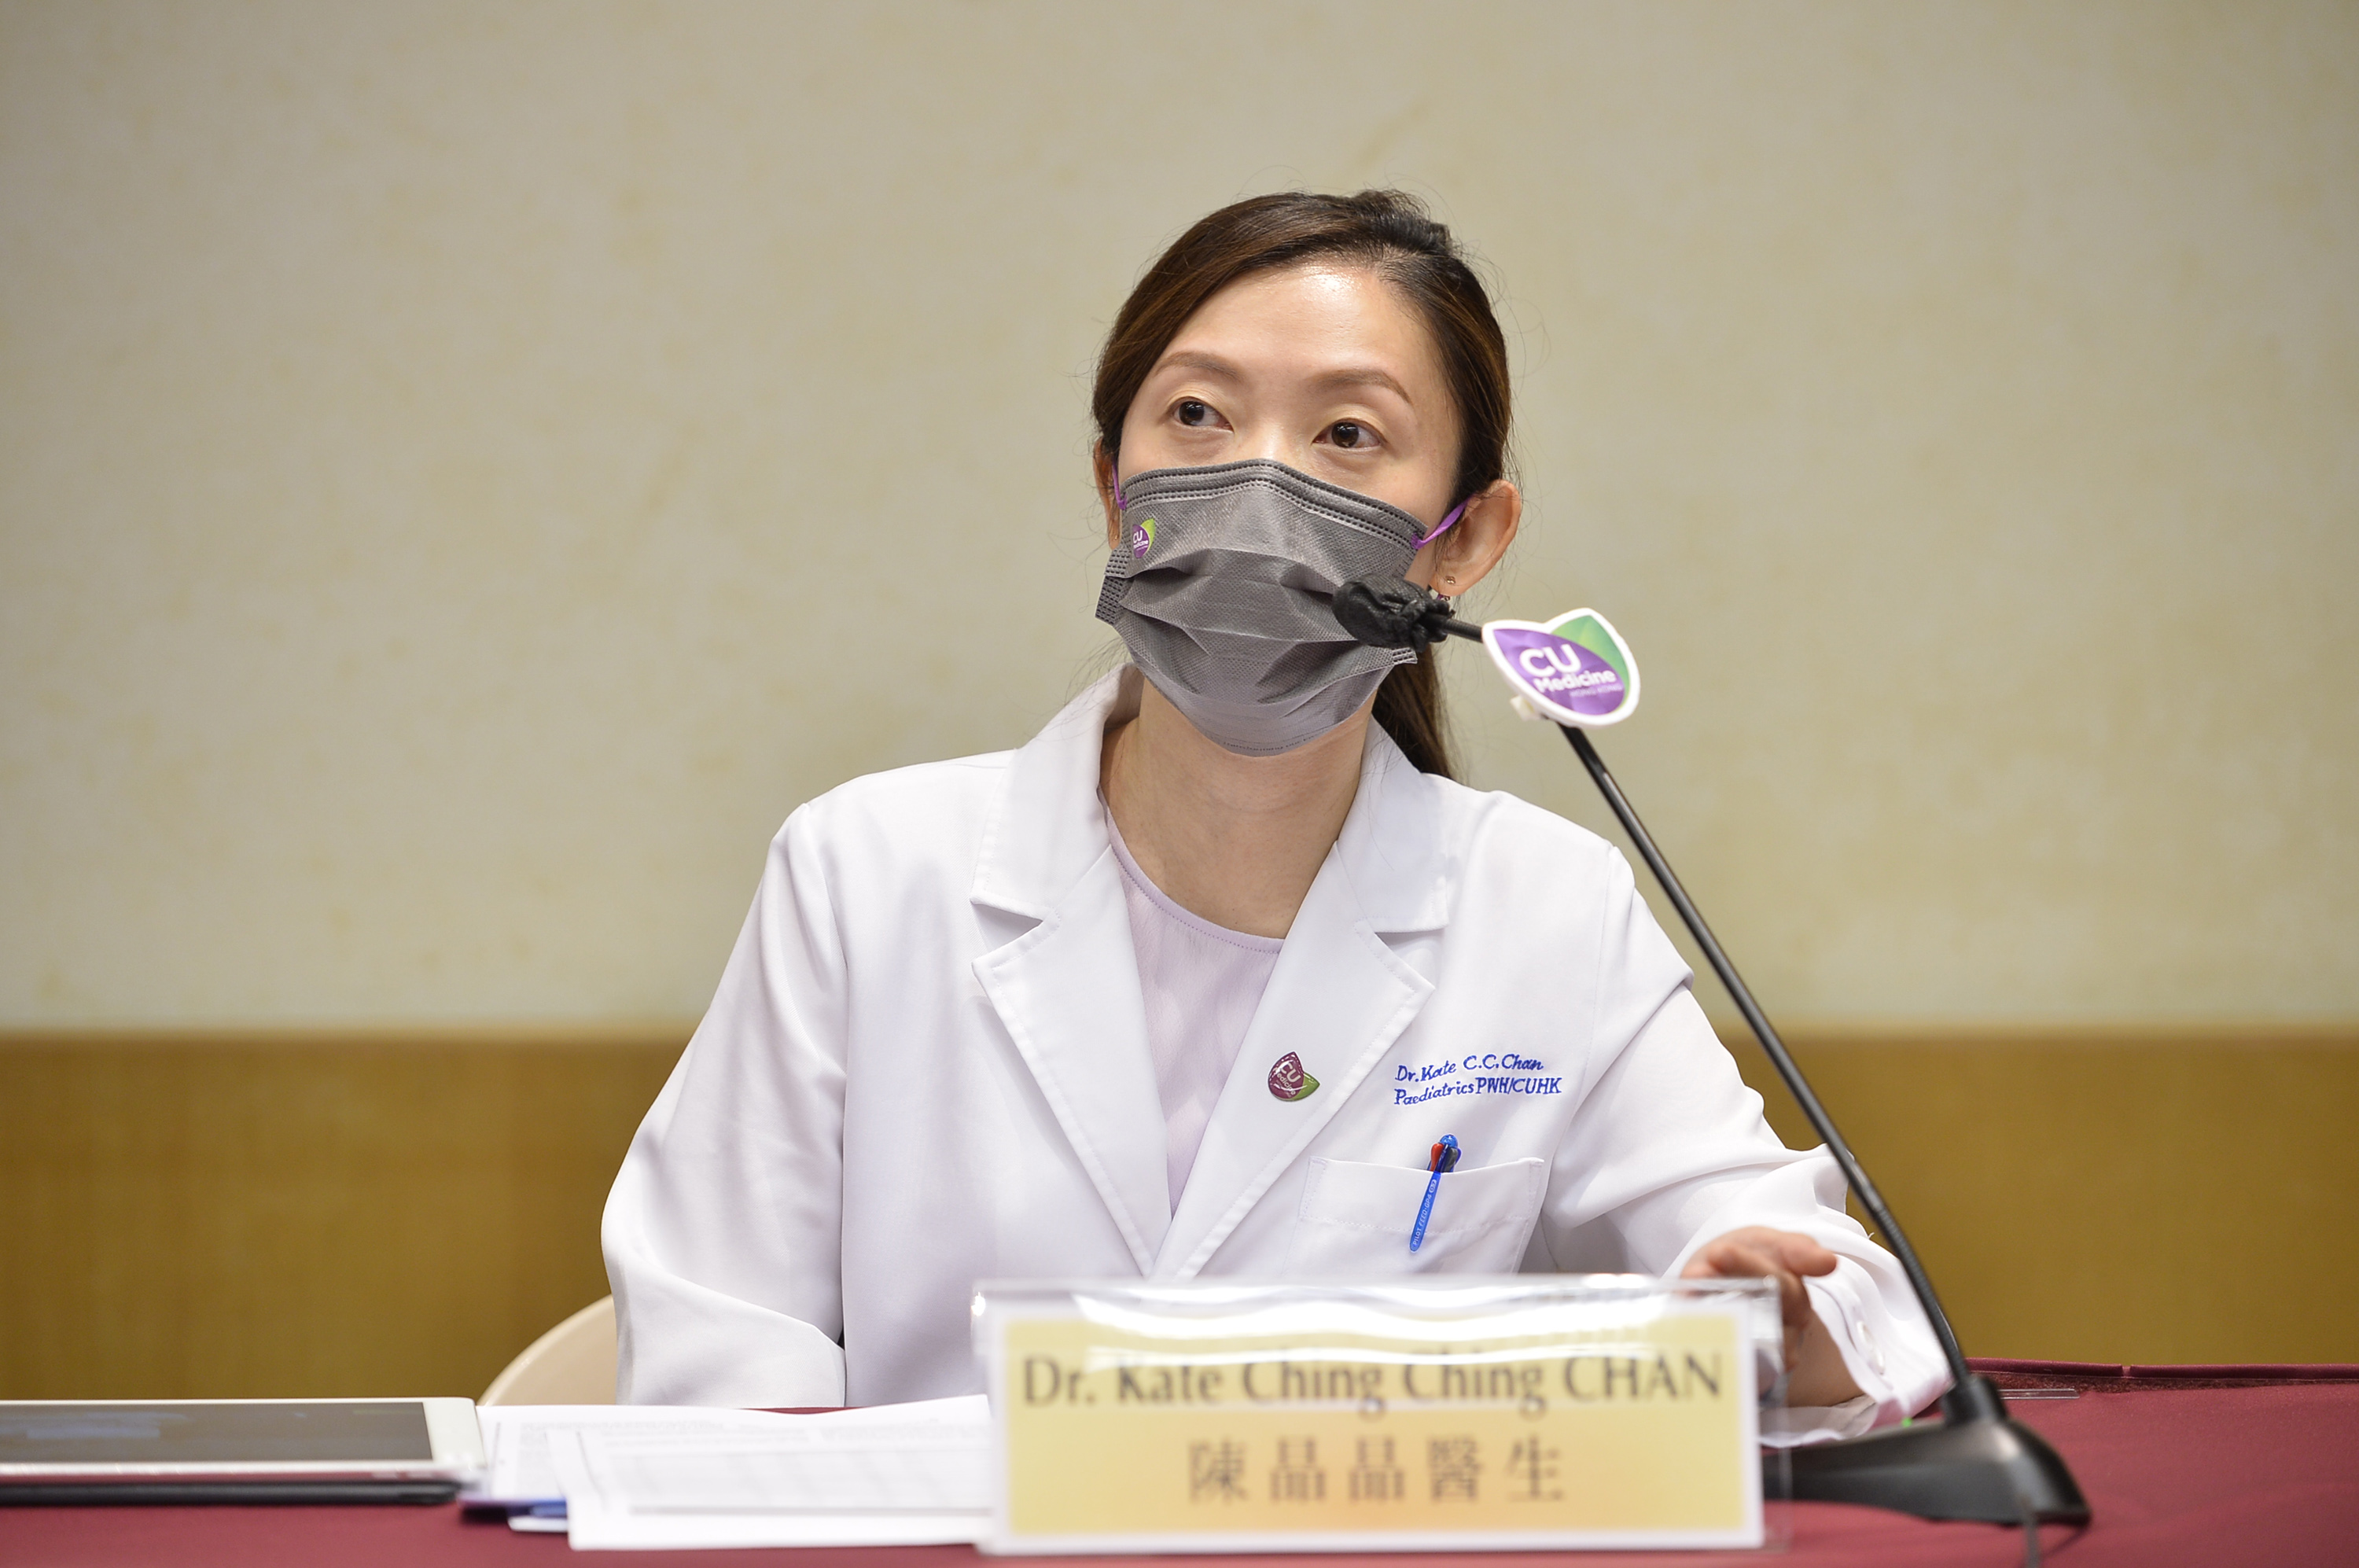 Dr. Kate Chan